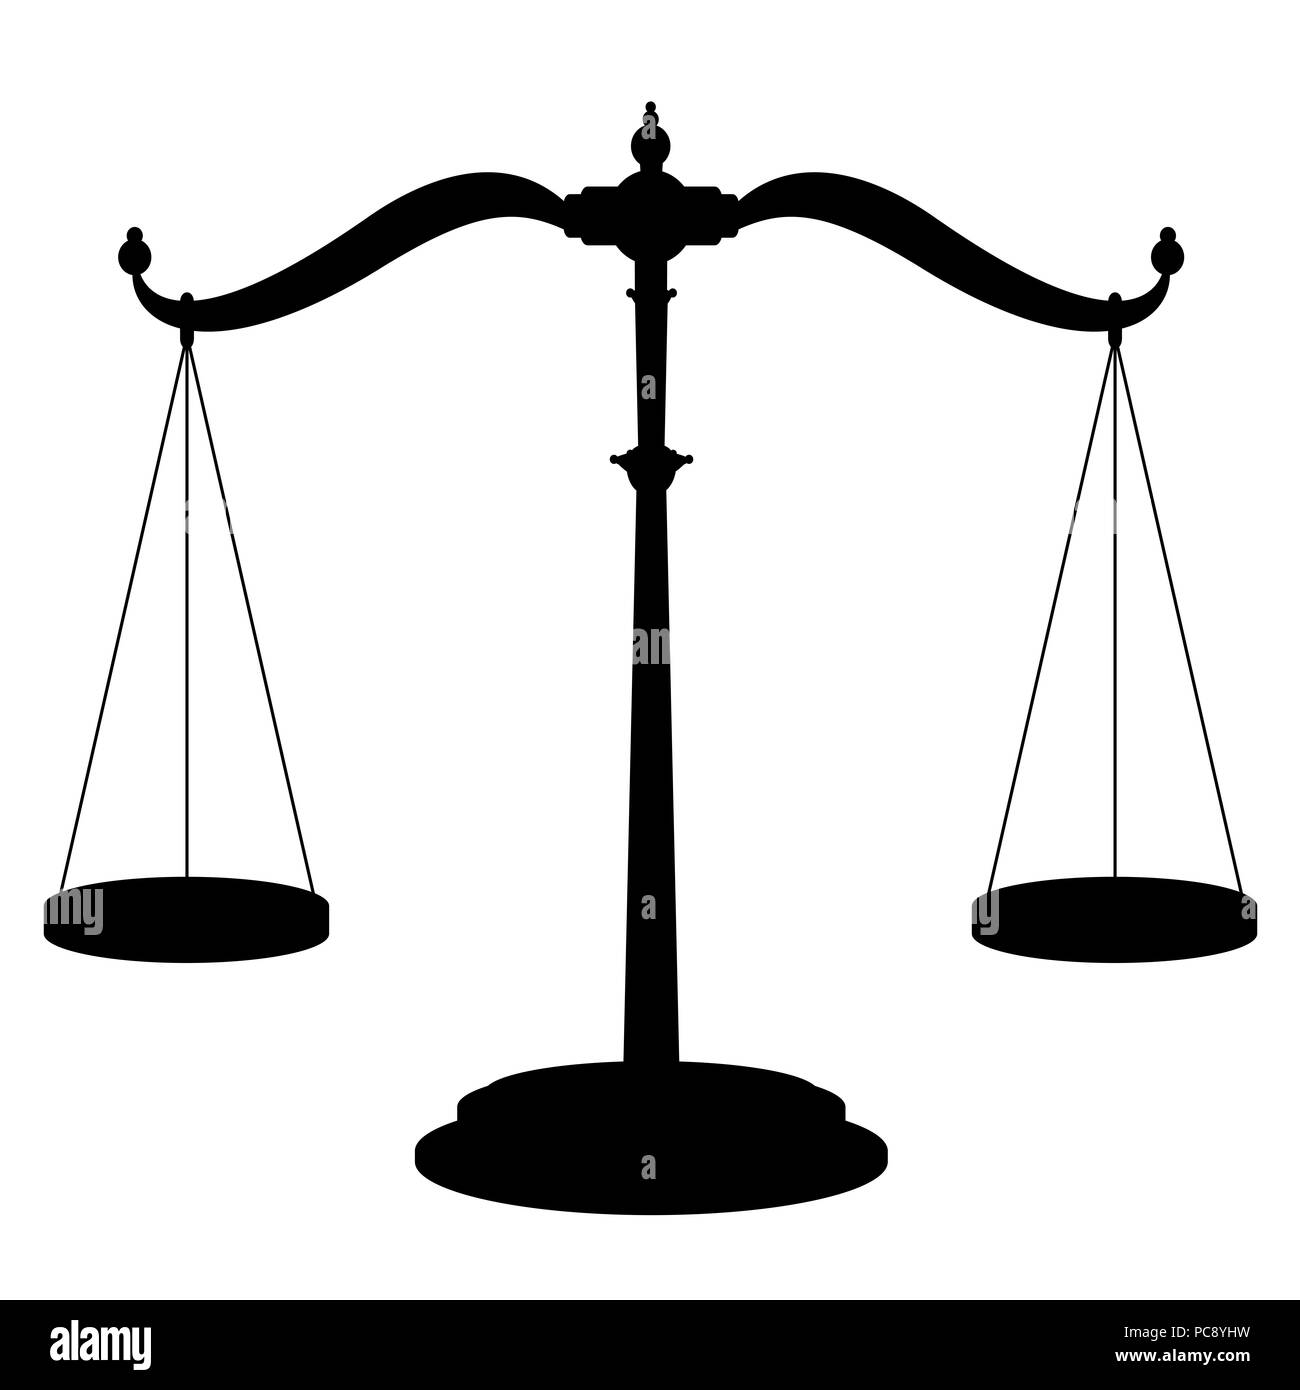 L'icône de l'échelle d'équilibre - symbole de pesage dont deux casseroles suspendues parfaitement équilibrés - illustration noir sur fond blanc. Banque D'Images